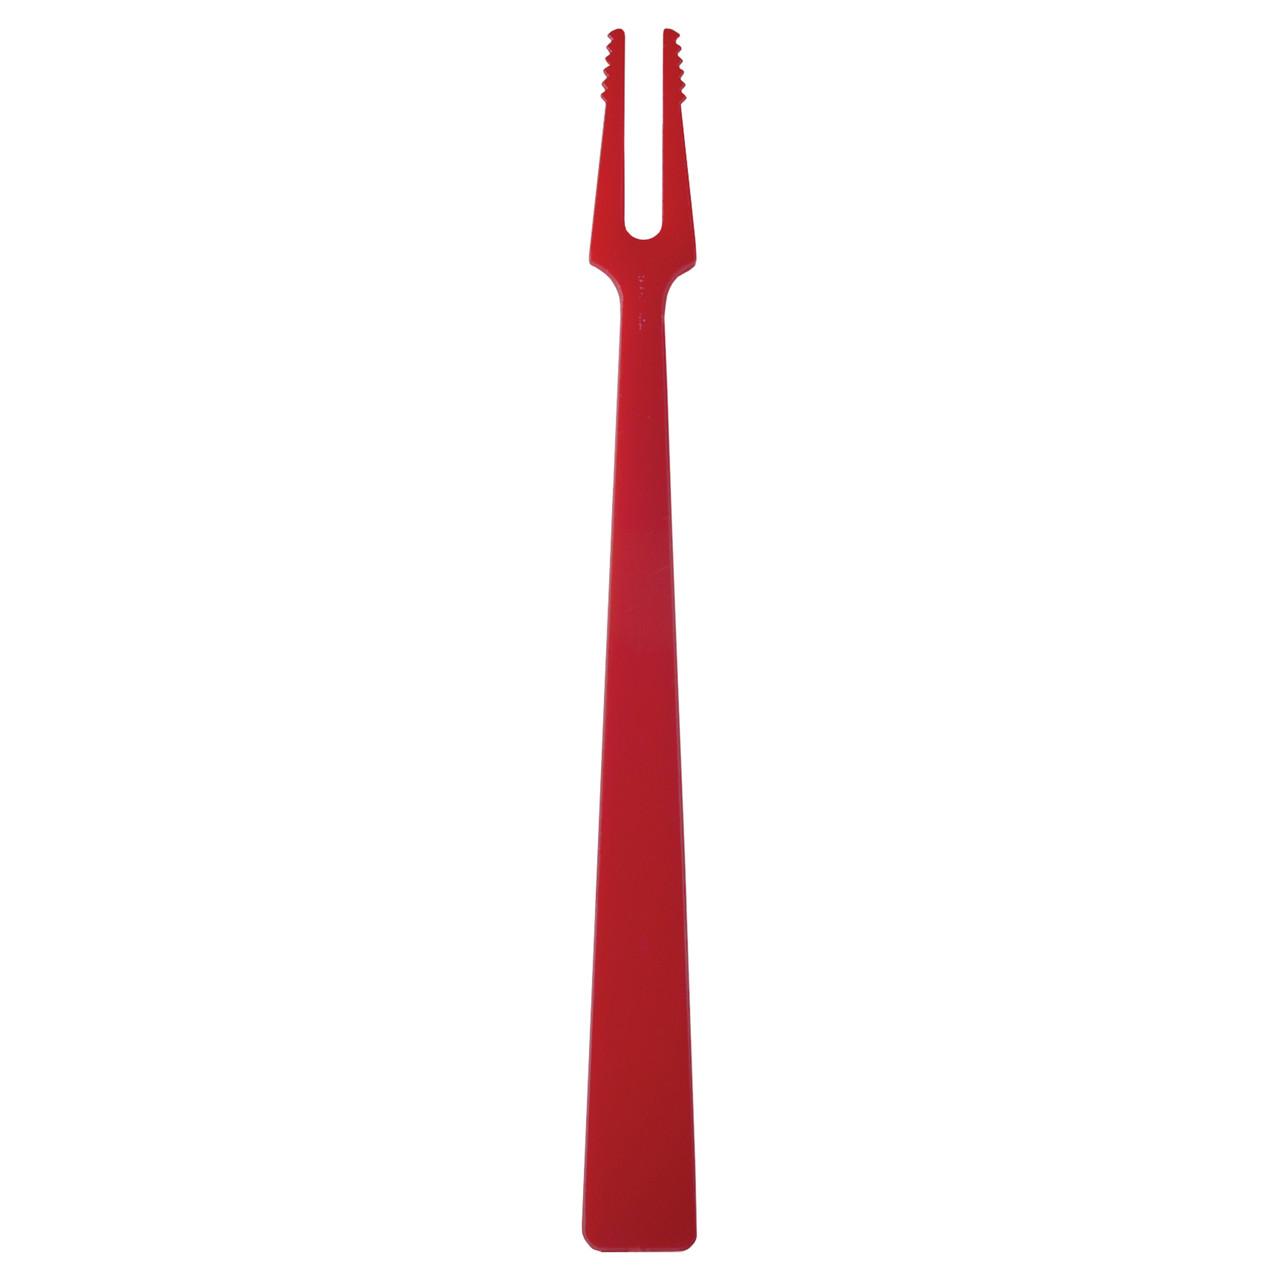 Spirit ® Picks & Utensils 5.5” Red Fish Fork/Fry Fork (SPFFFRE6)